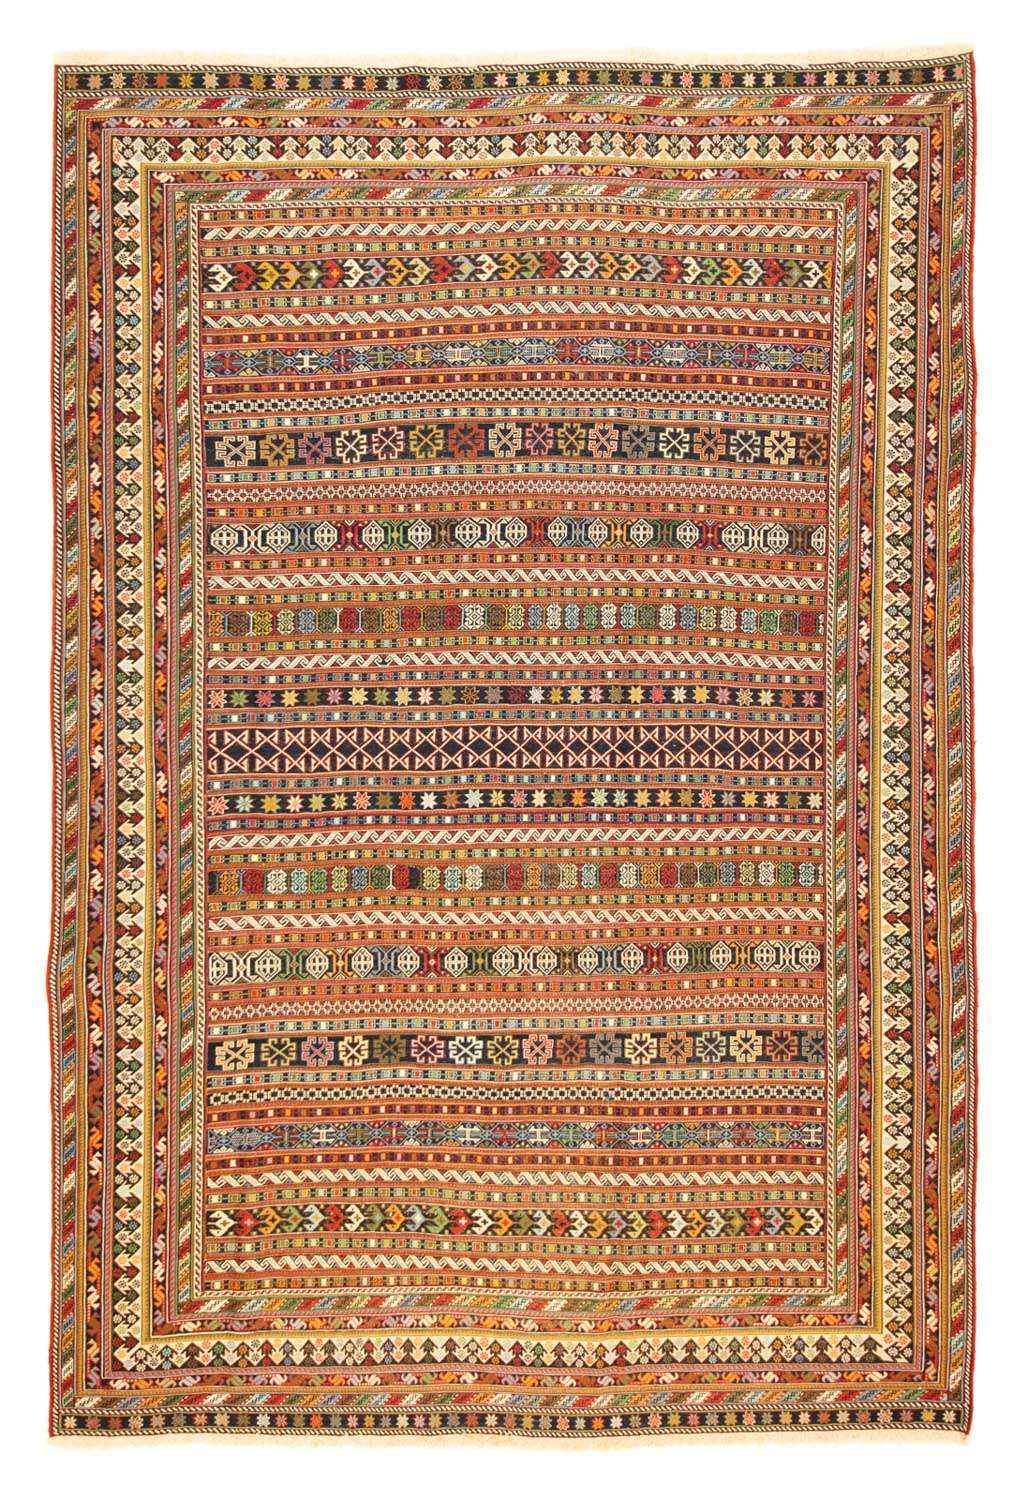 Tapis persan - Nomadic - 287 x 194 cm - multicolore